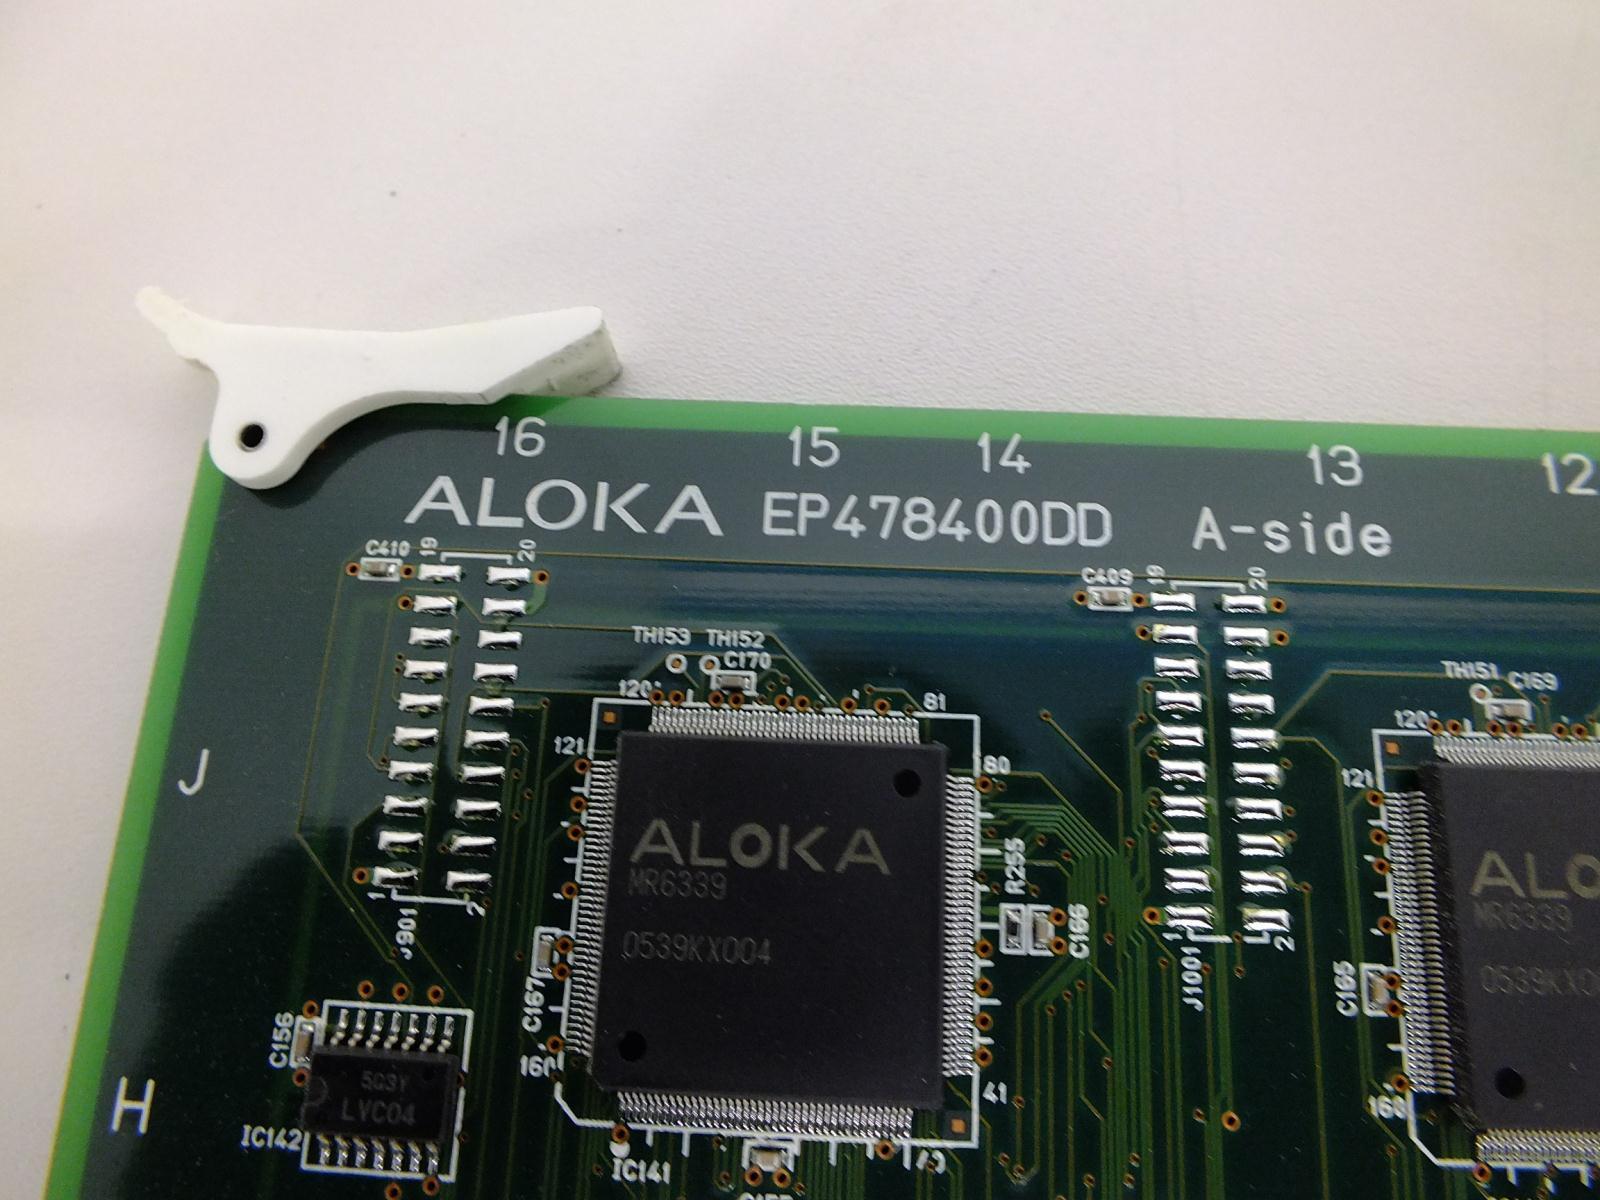 Aloka Prosound Ultrasound SSD-3500SV Board EP478400DD A-Side DIAGNOSTIC ULTRASOUND MACHINES FOR SALE